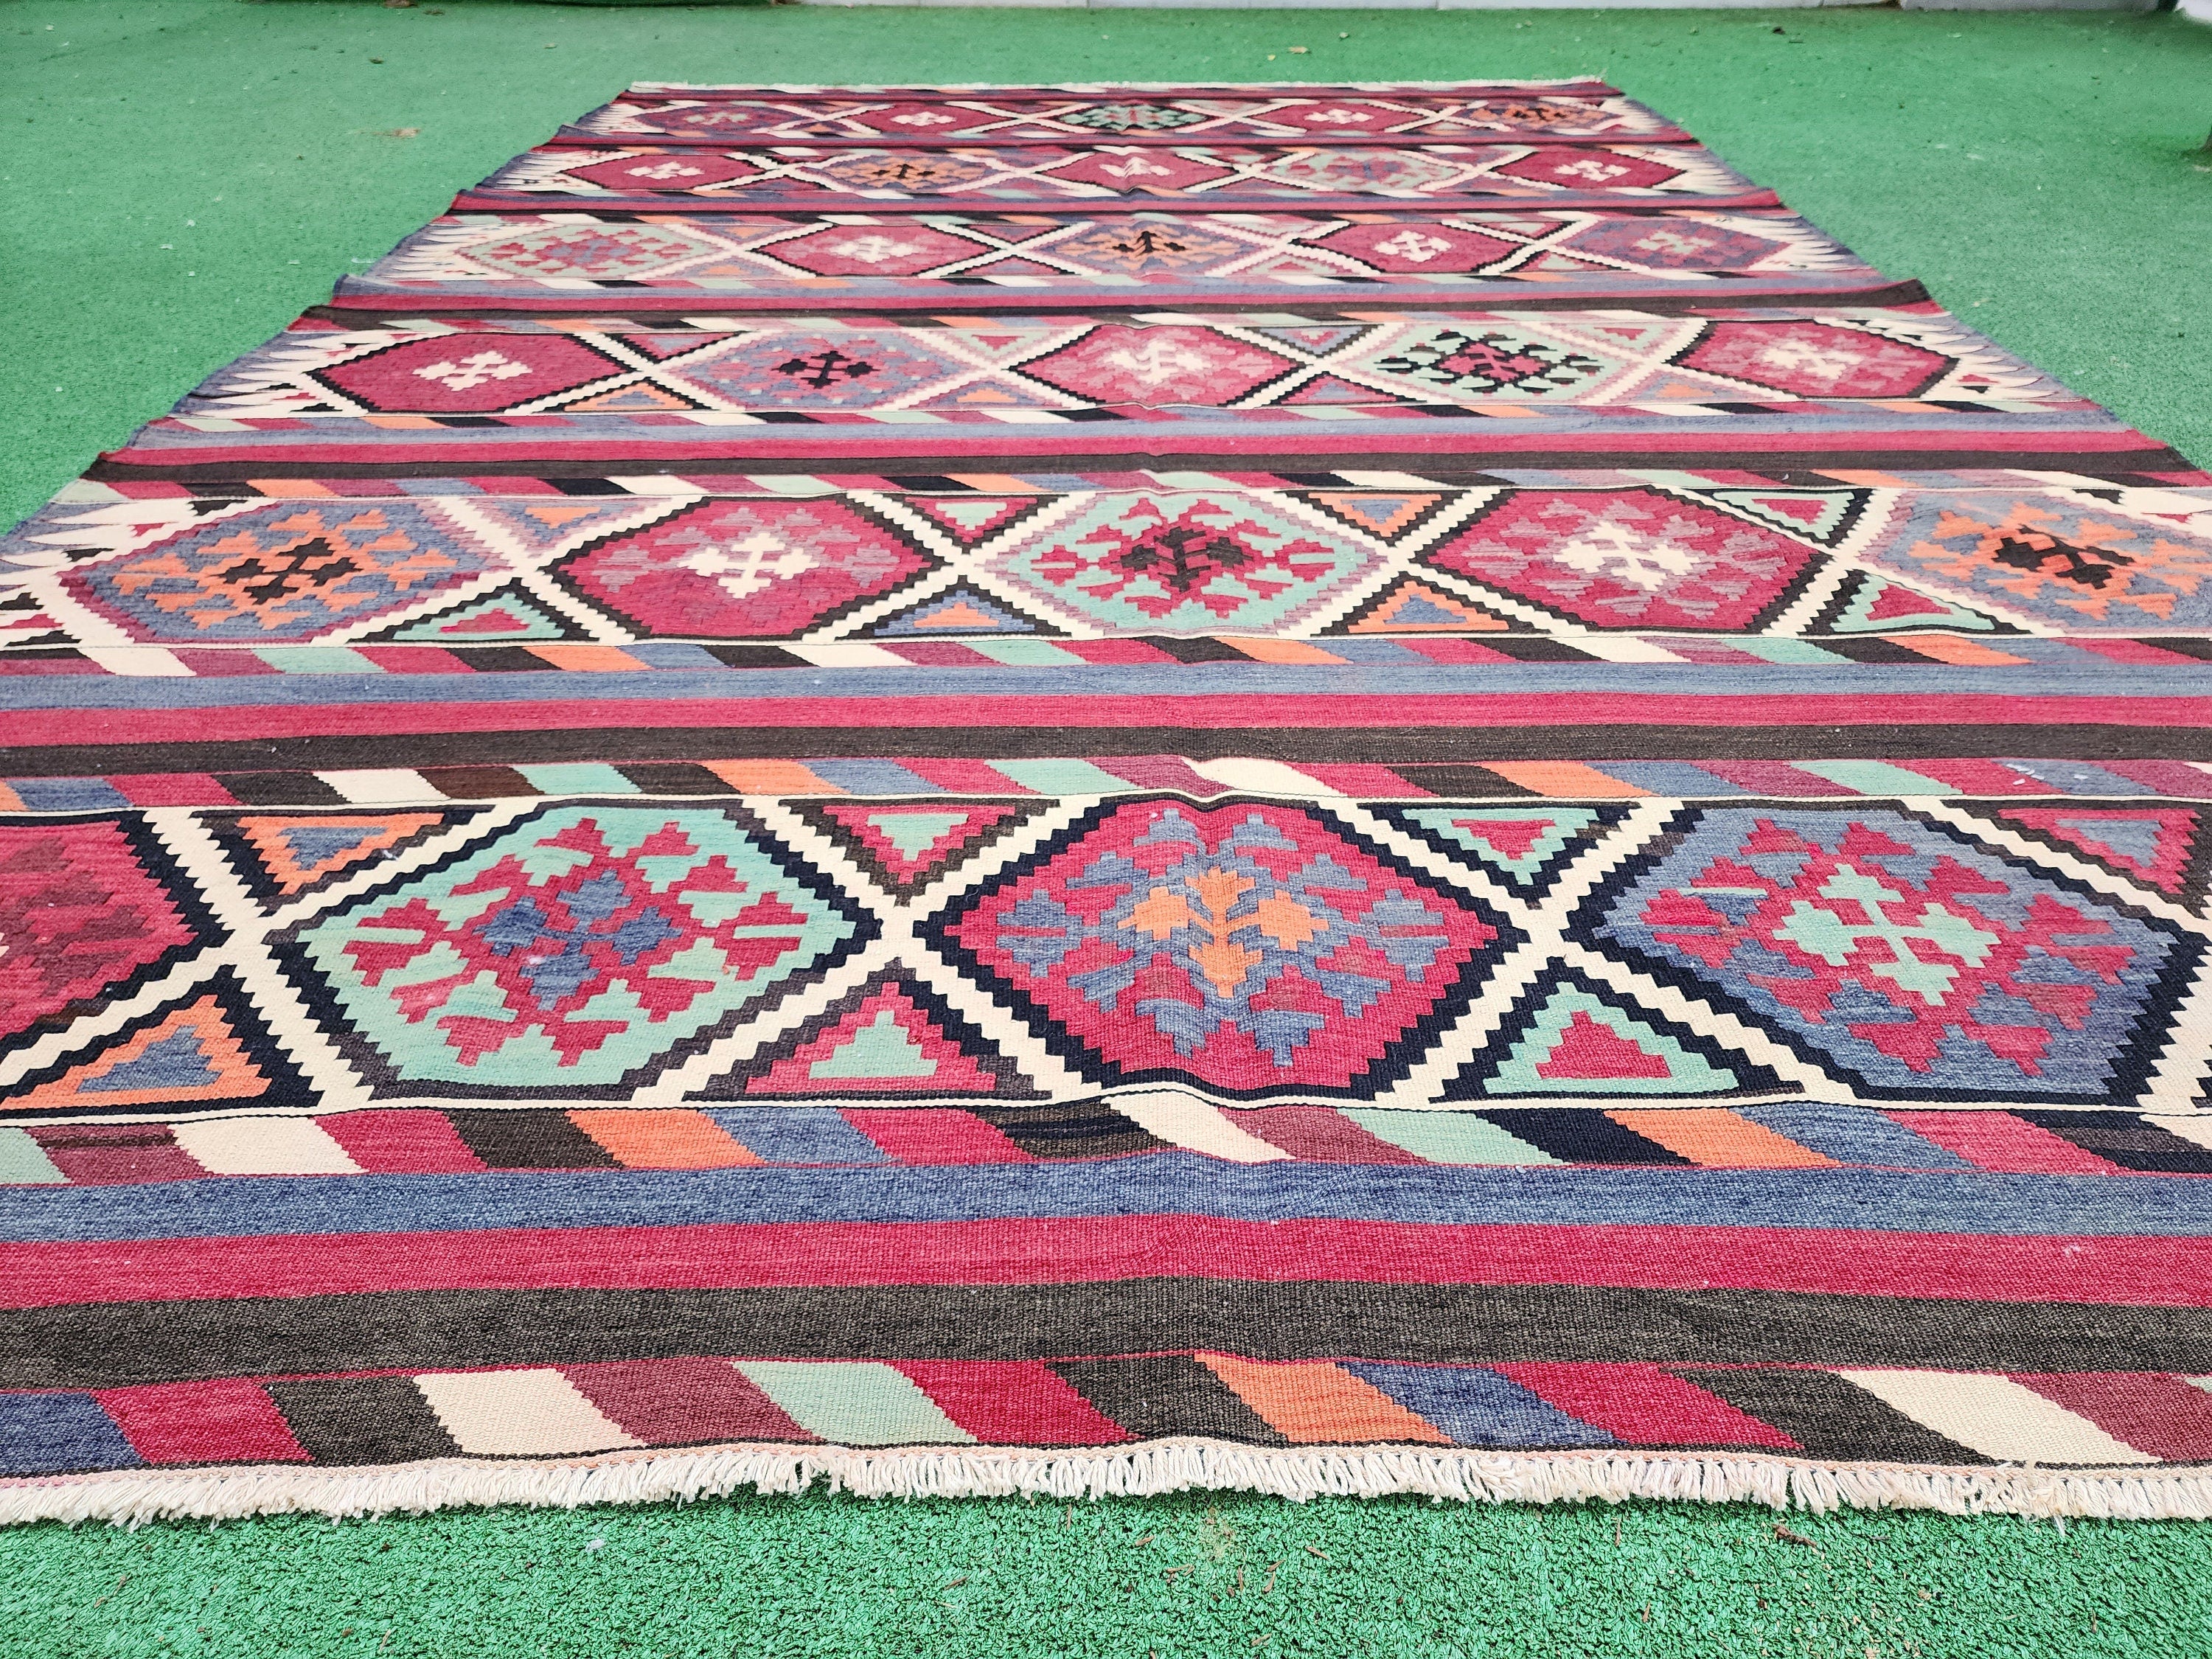 Vintage Caucasus Kazak Kilim, Handmade Organic Wool Rug, Tribal Nomadic Moroccan Bohemian Living Room Rustic Decor Persian Area Rug 6x10 ft